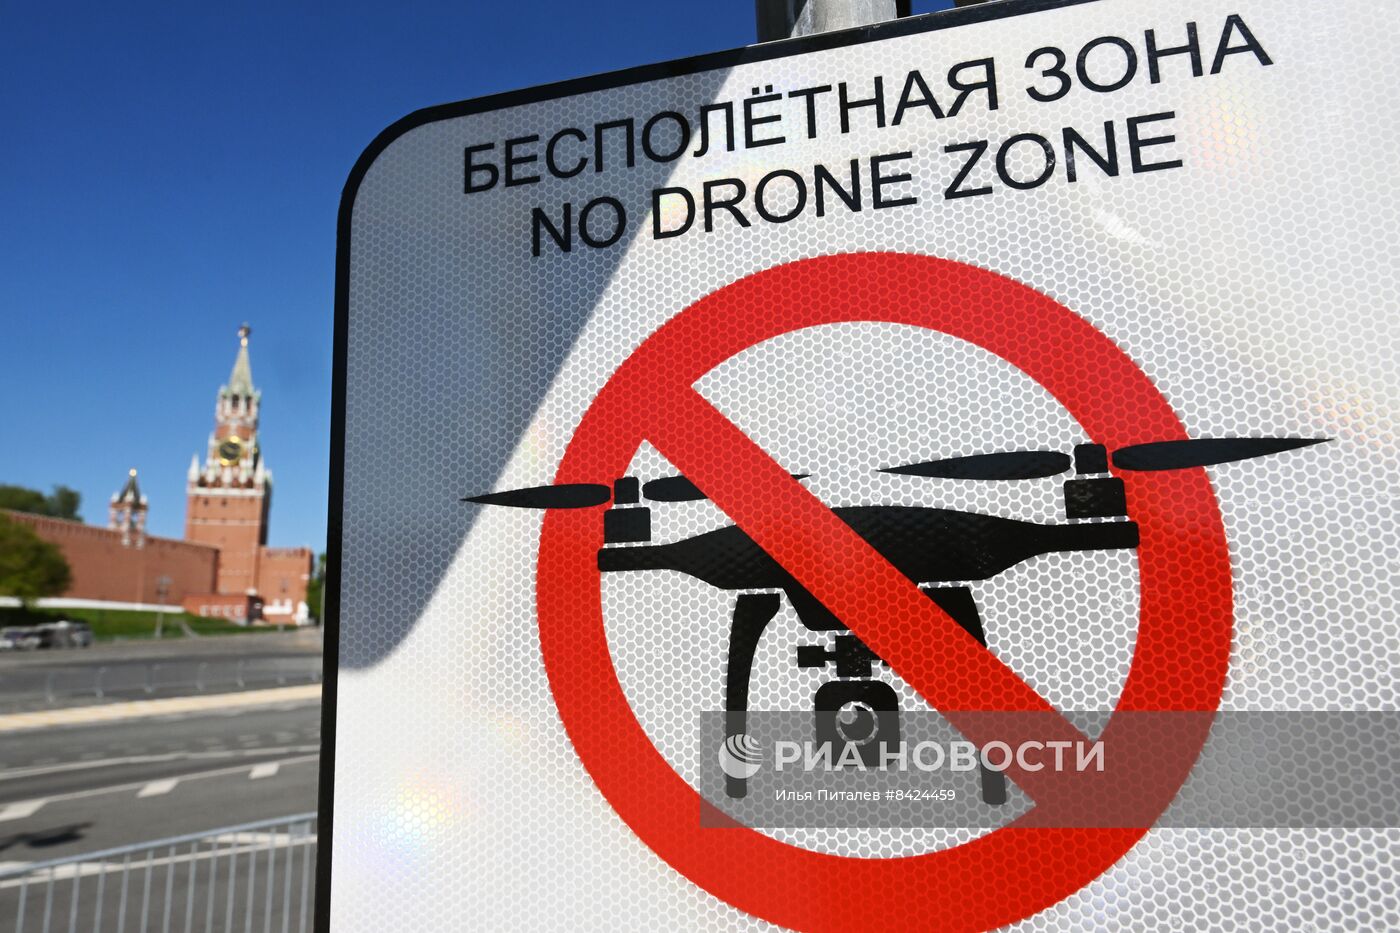 Знаки "Бесполетная зона" в центре Москвы